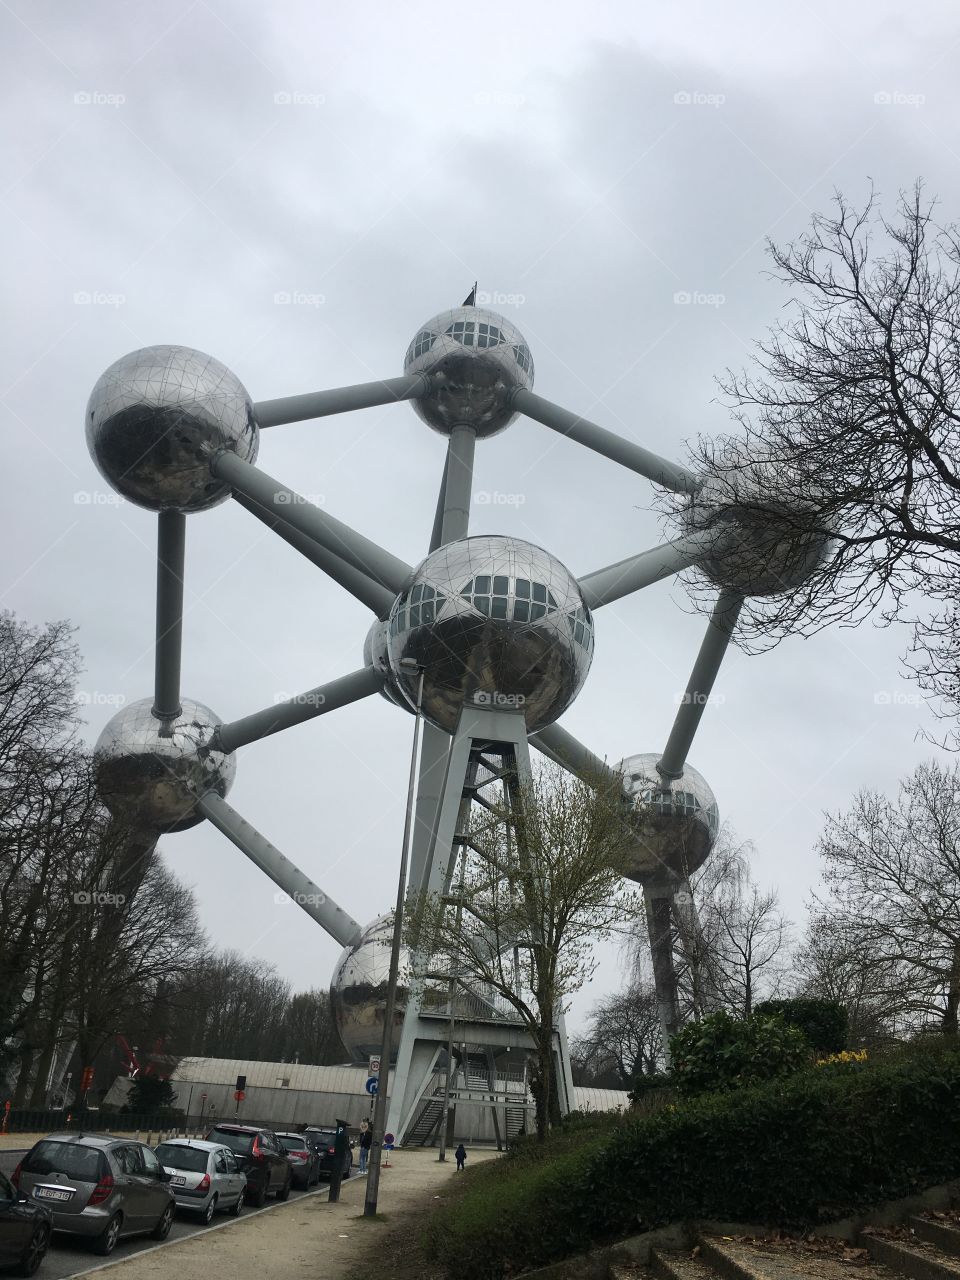 Atomium in Brussels, Belgium. 